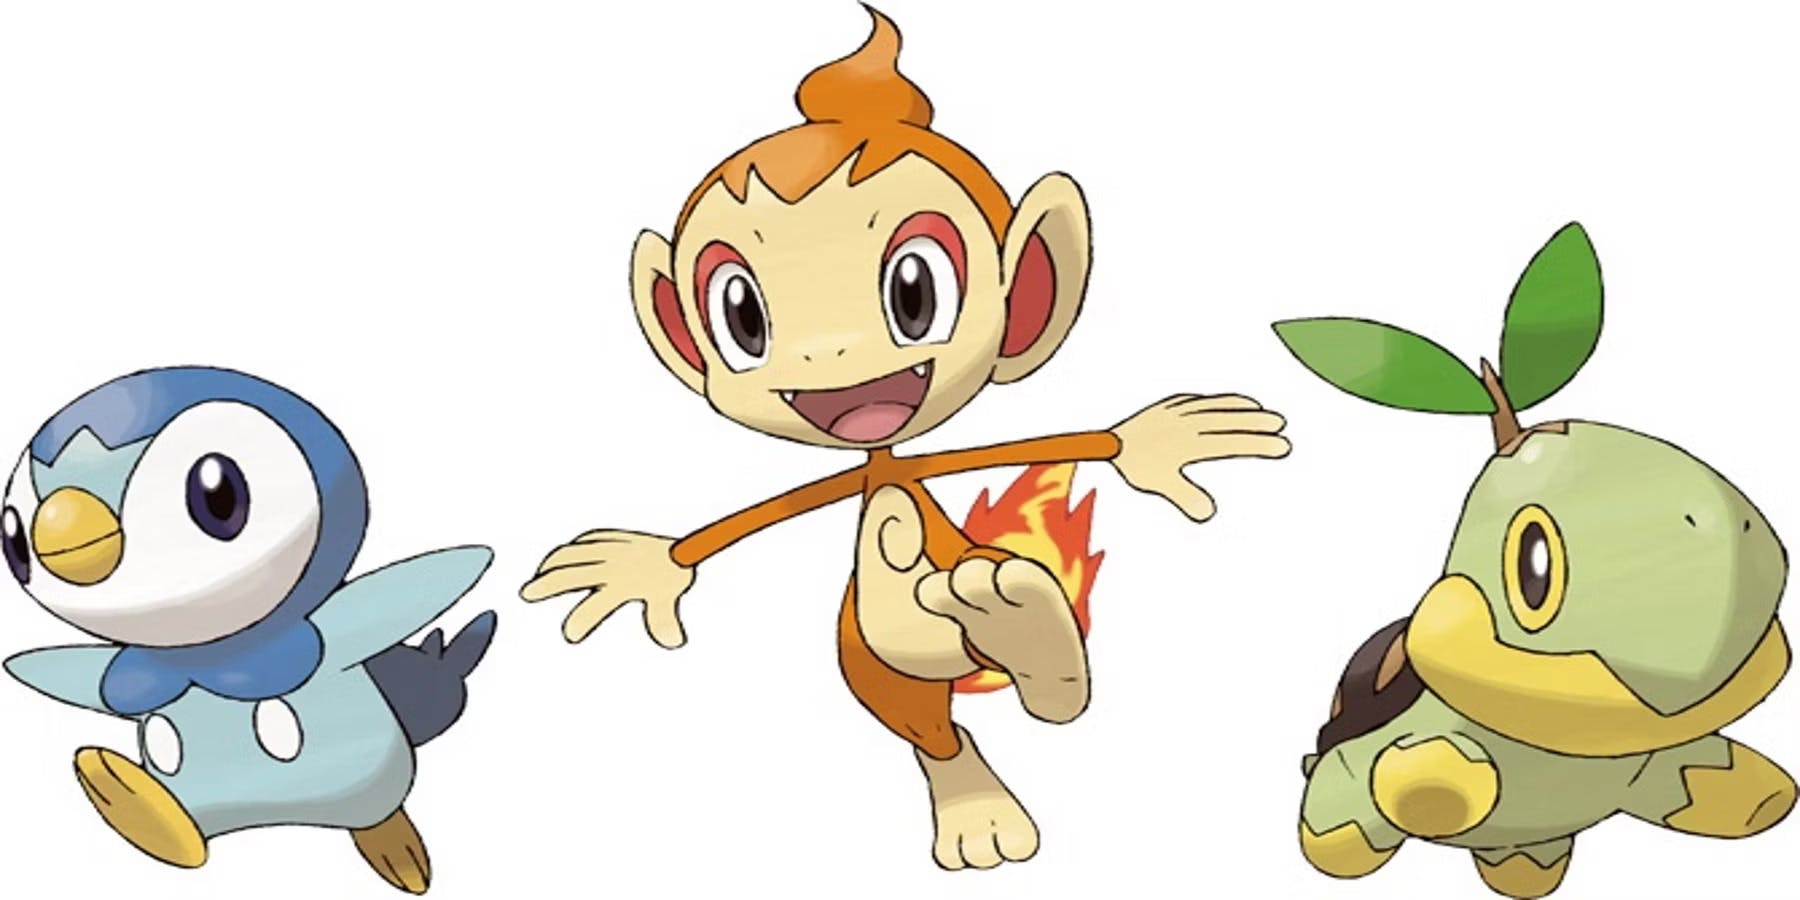 Starter Pokémon: Gen 4 (Piplup, Chimchar, Turtwig)